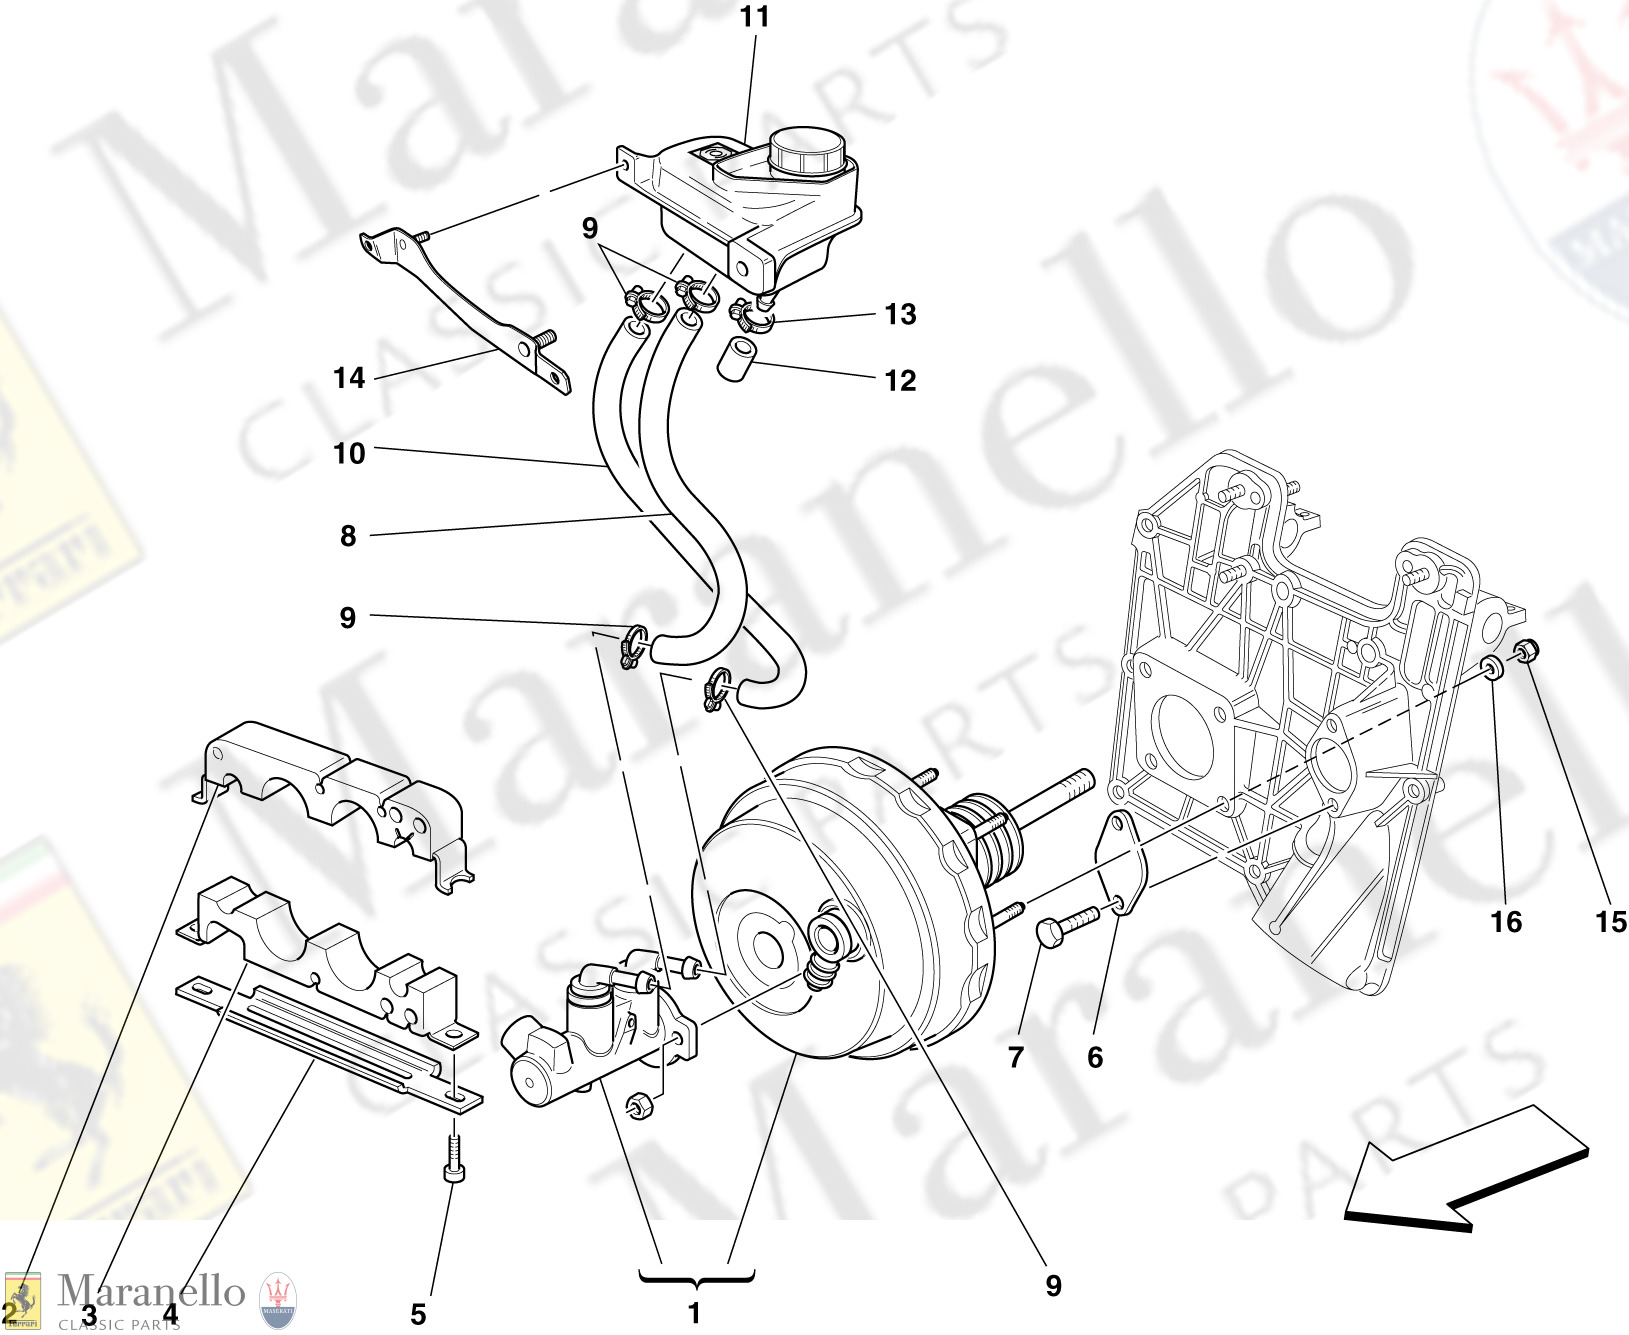 036 - Hydraulic Brake And Clutch Controls